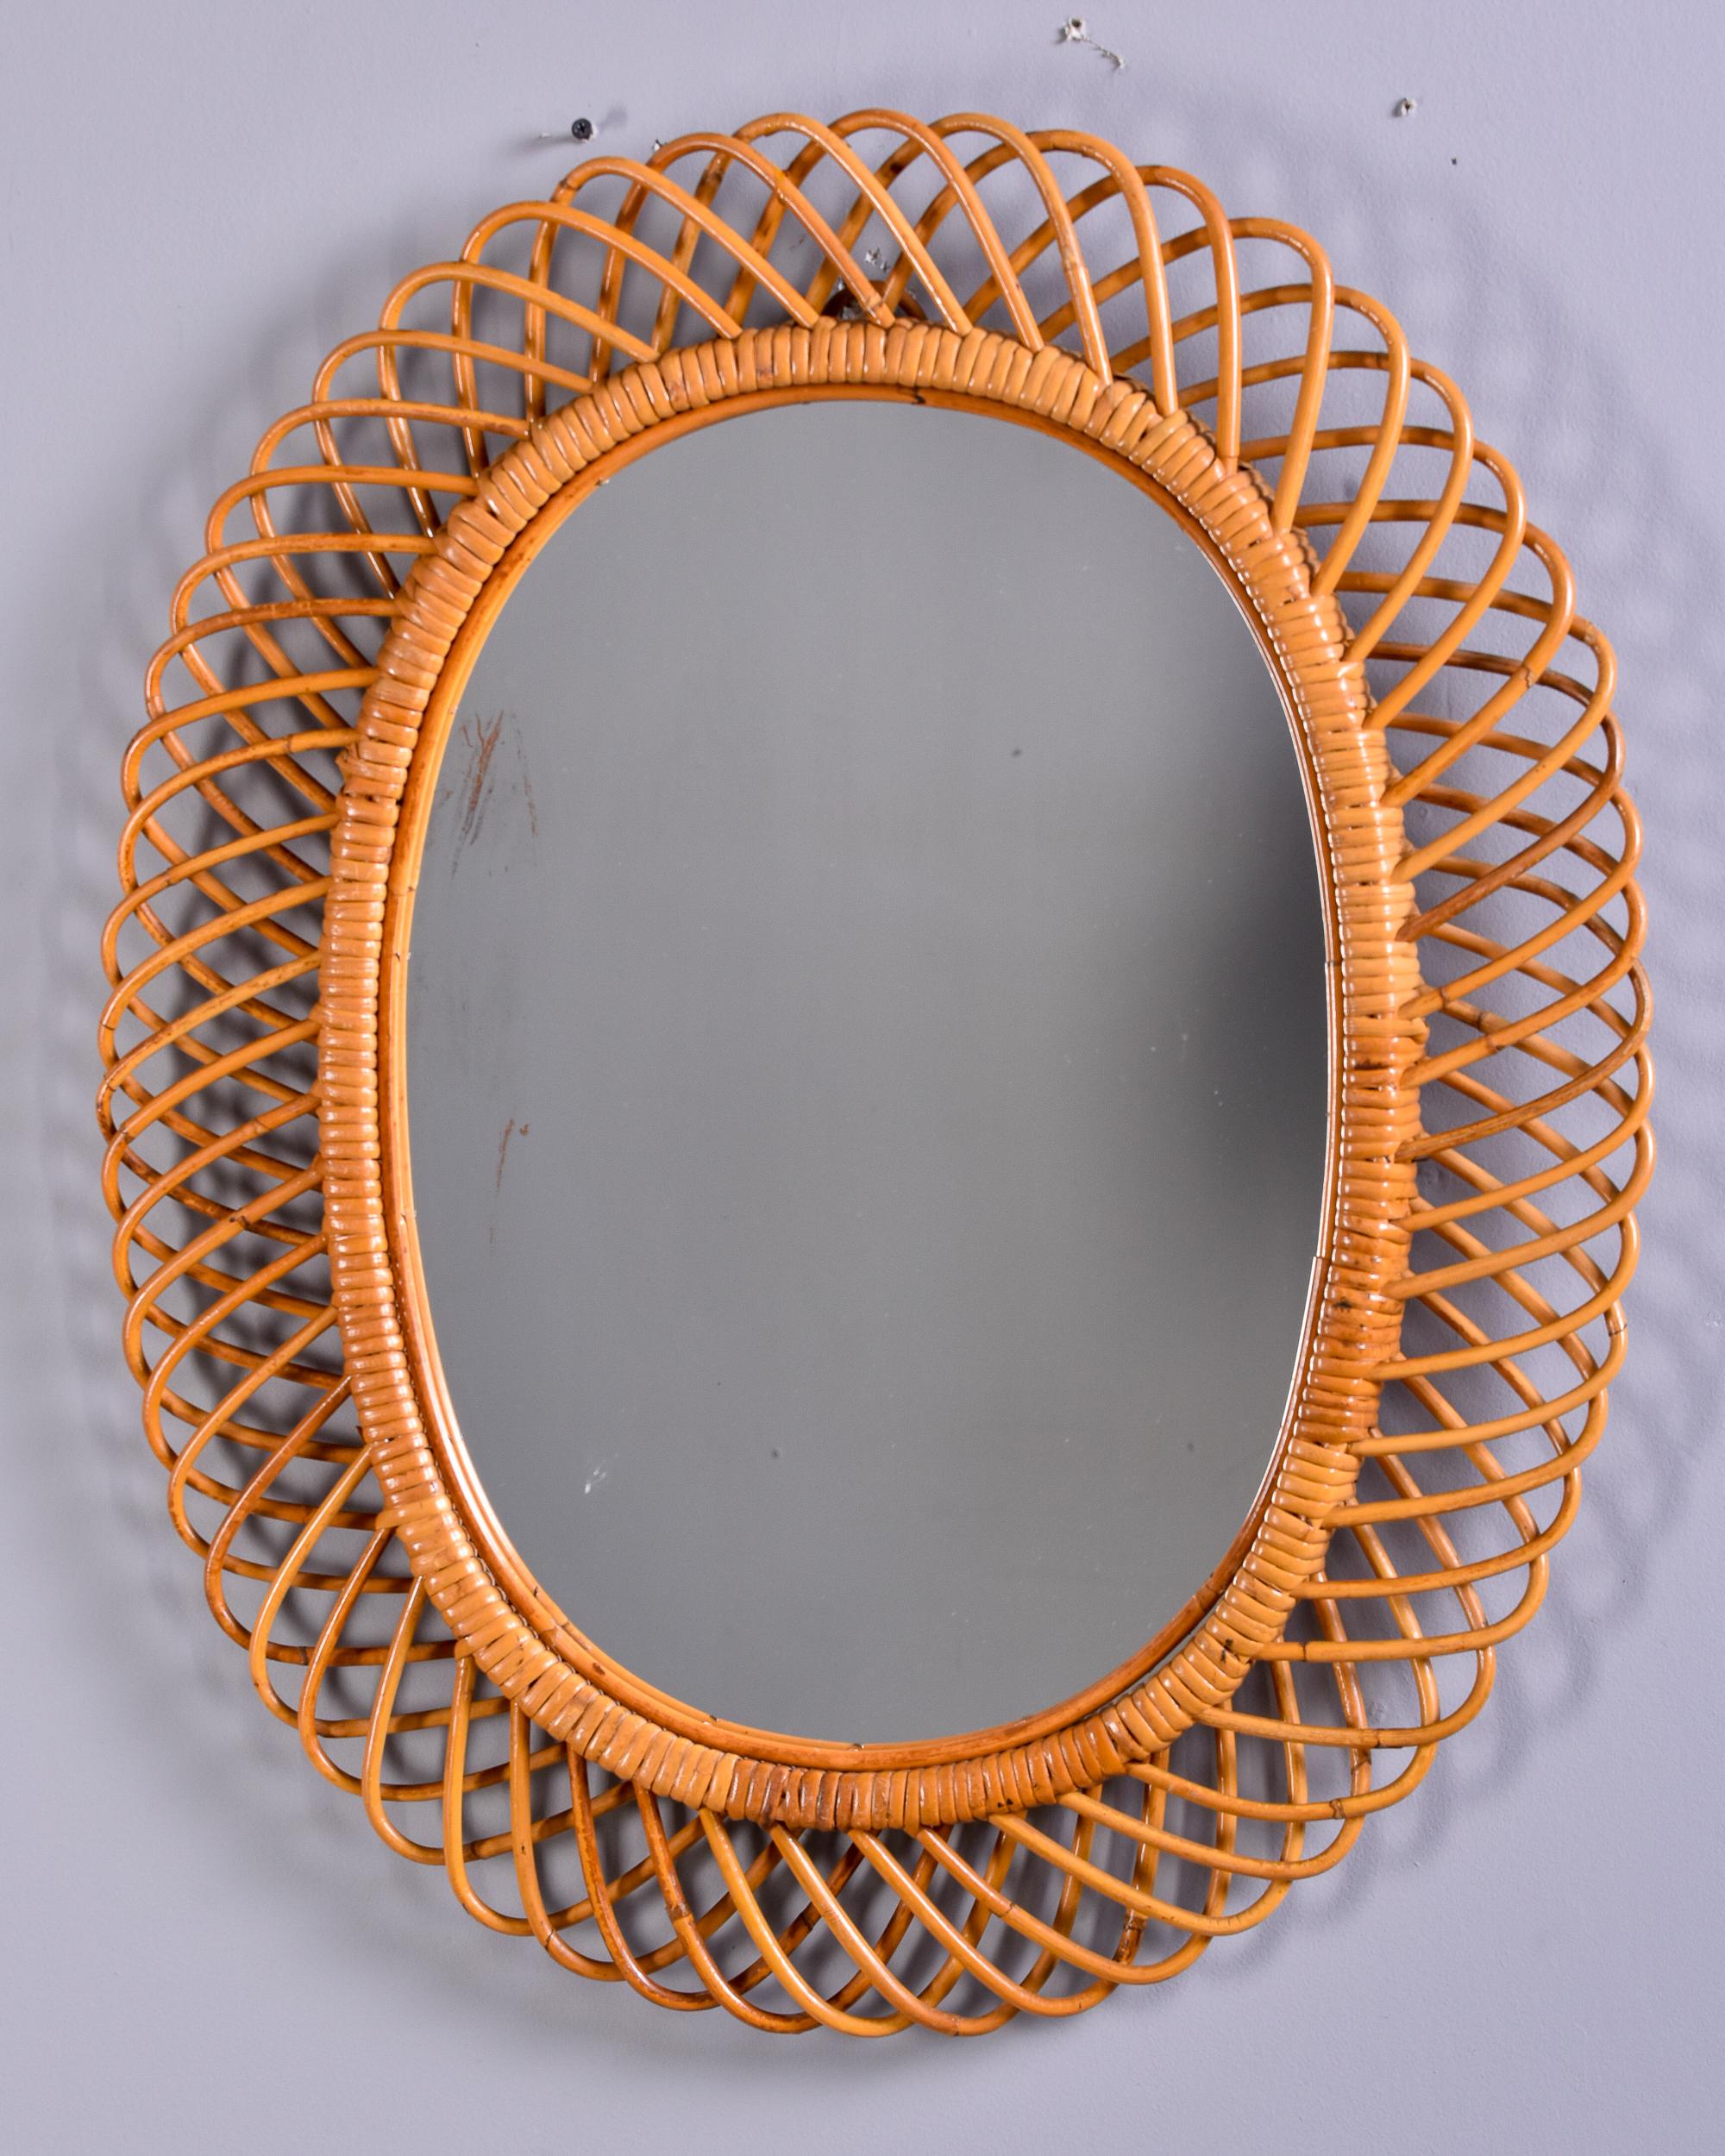 Italian Mid-Century Modern Rattan Oval Mirror